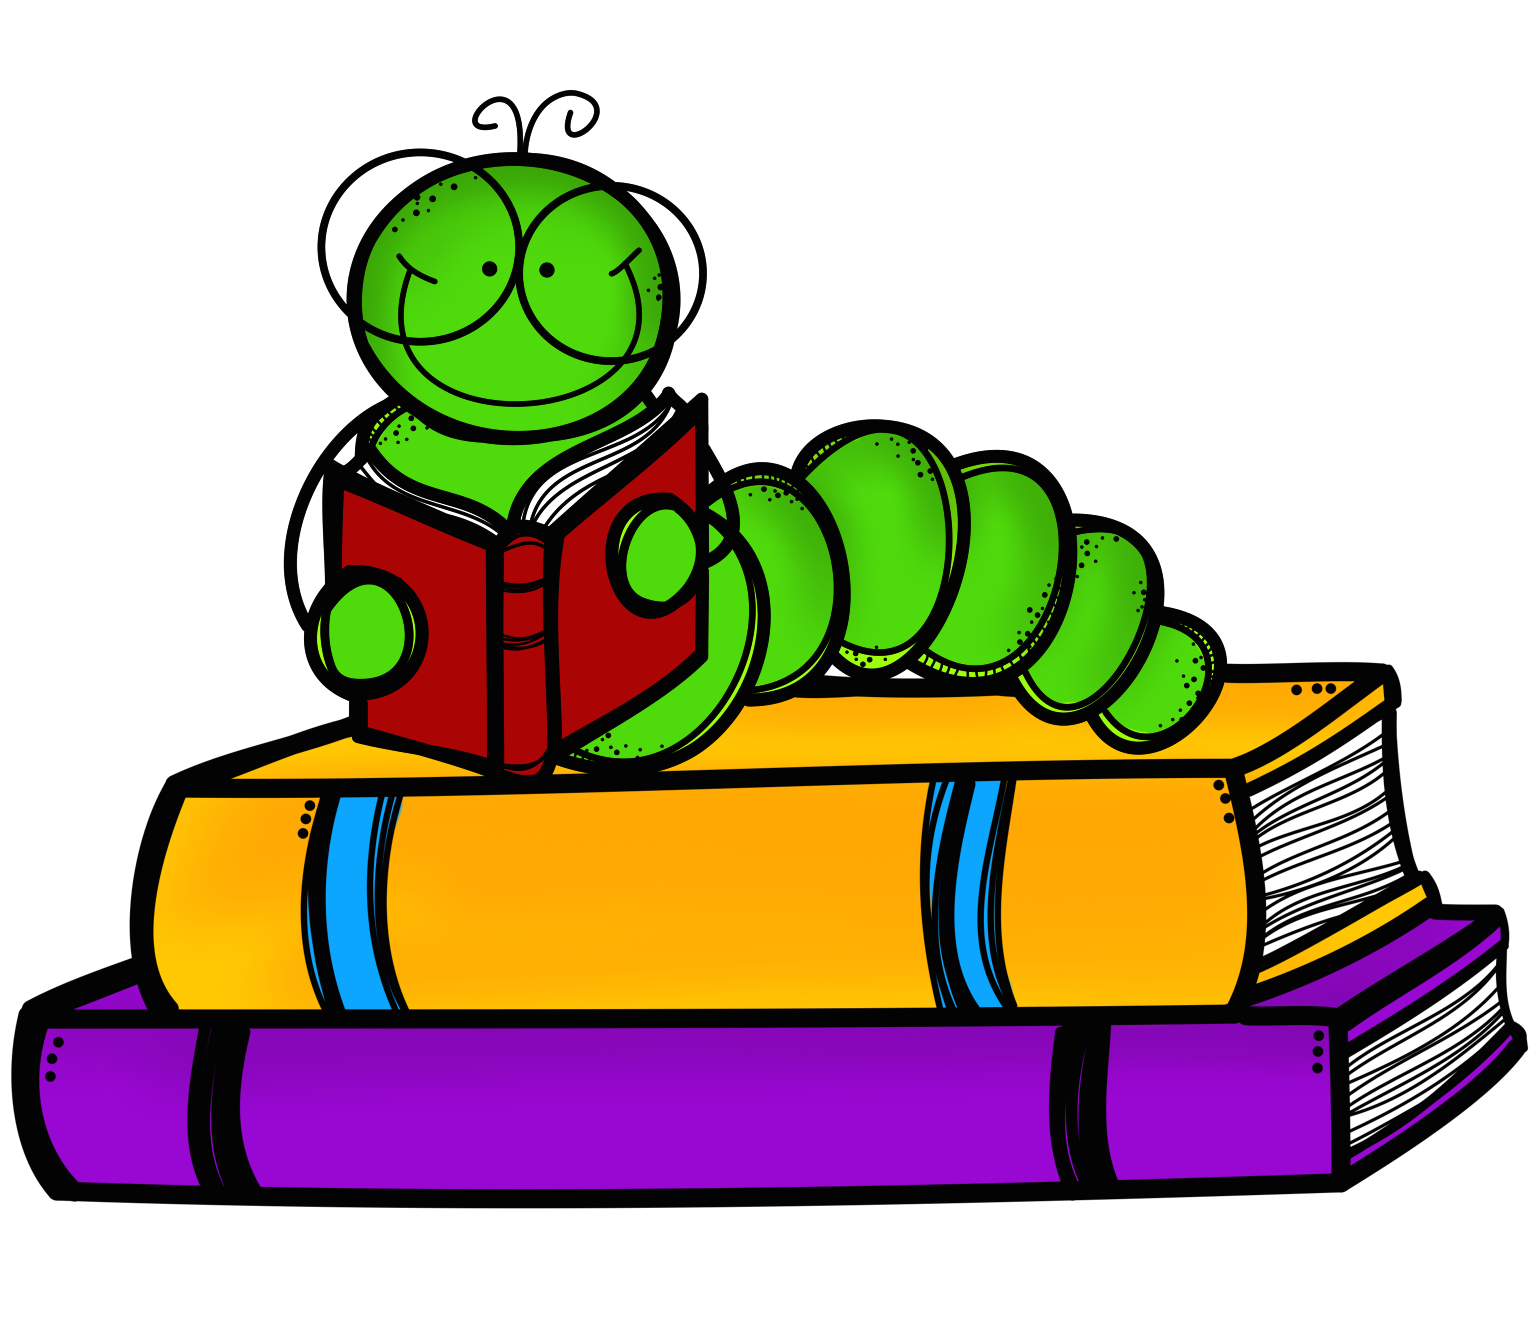 bookworm books caterpillar sm